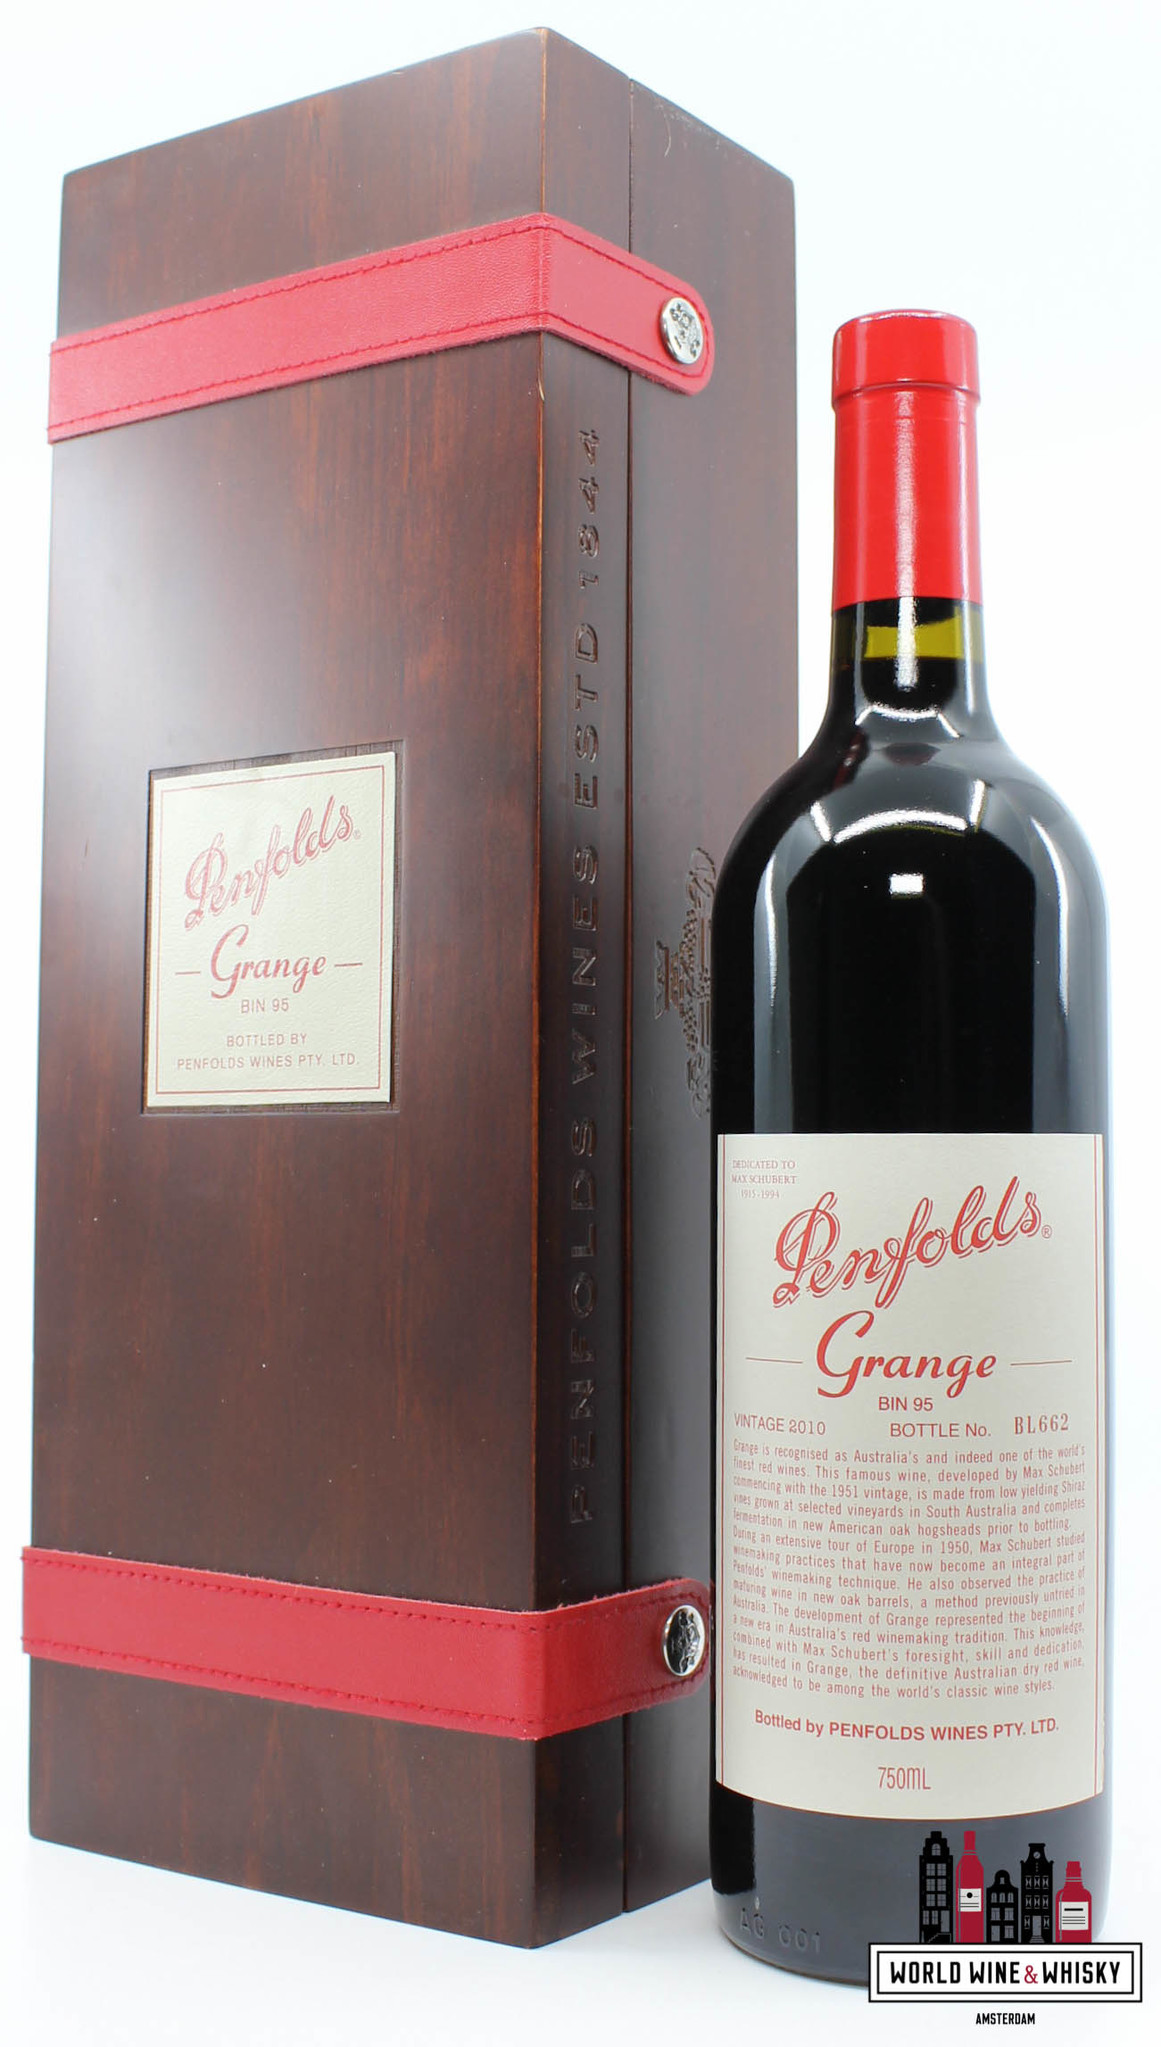 Penfolds Grange Bin 95 2010 (in luxury case) - World Wine & Whisky